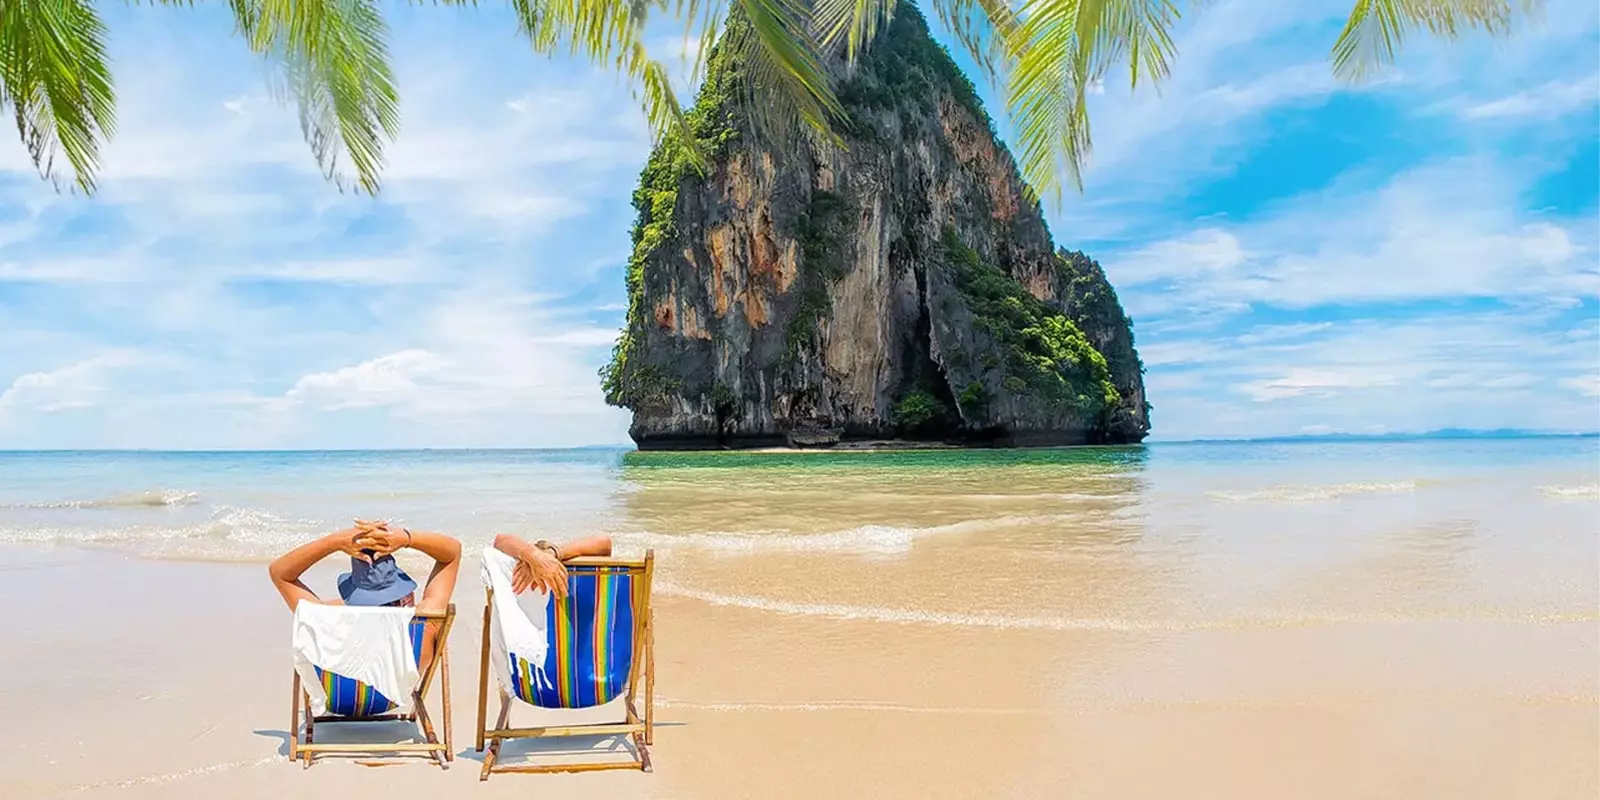 جاذبه های گردشگری و تور تایلند کجاست؟ اگر قصد تجربه یک مسافرت در فضایی کاملا متفاوت از فرهنگ خود را دارید، تایلند بهترین گزینه خواهد...